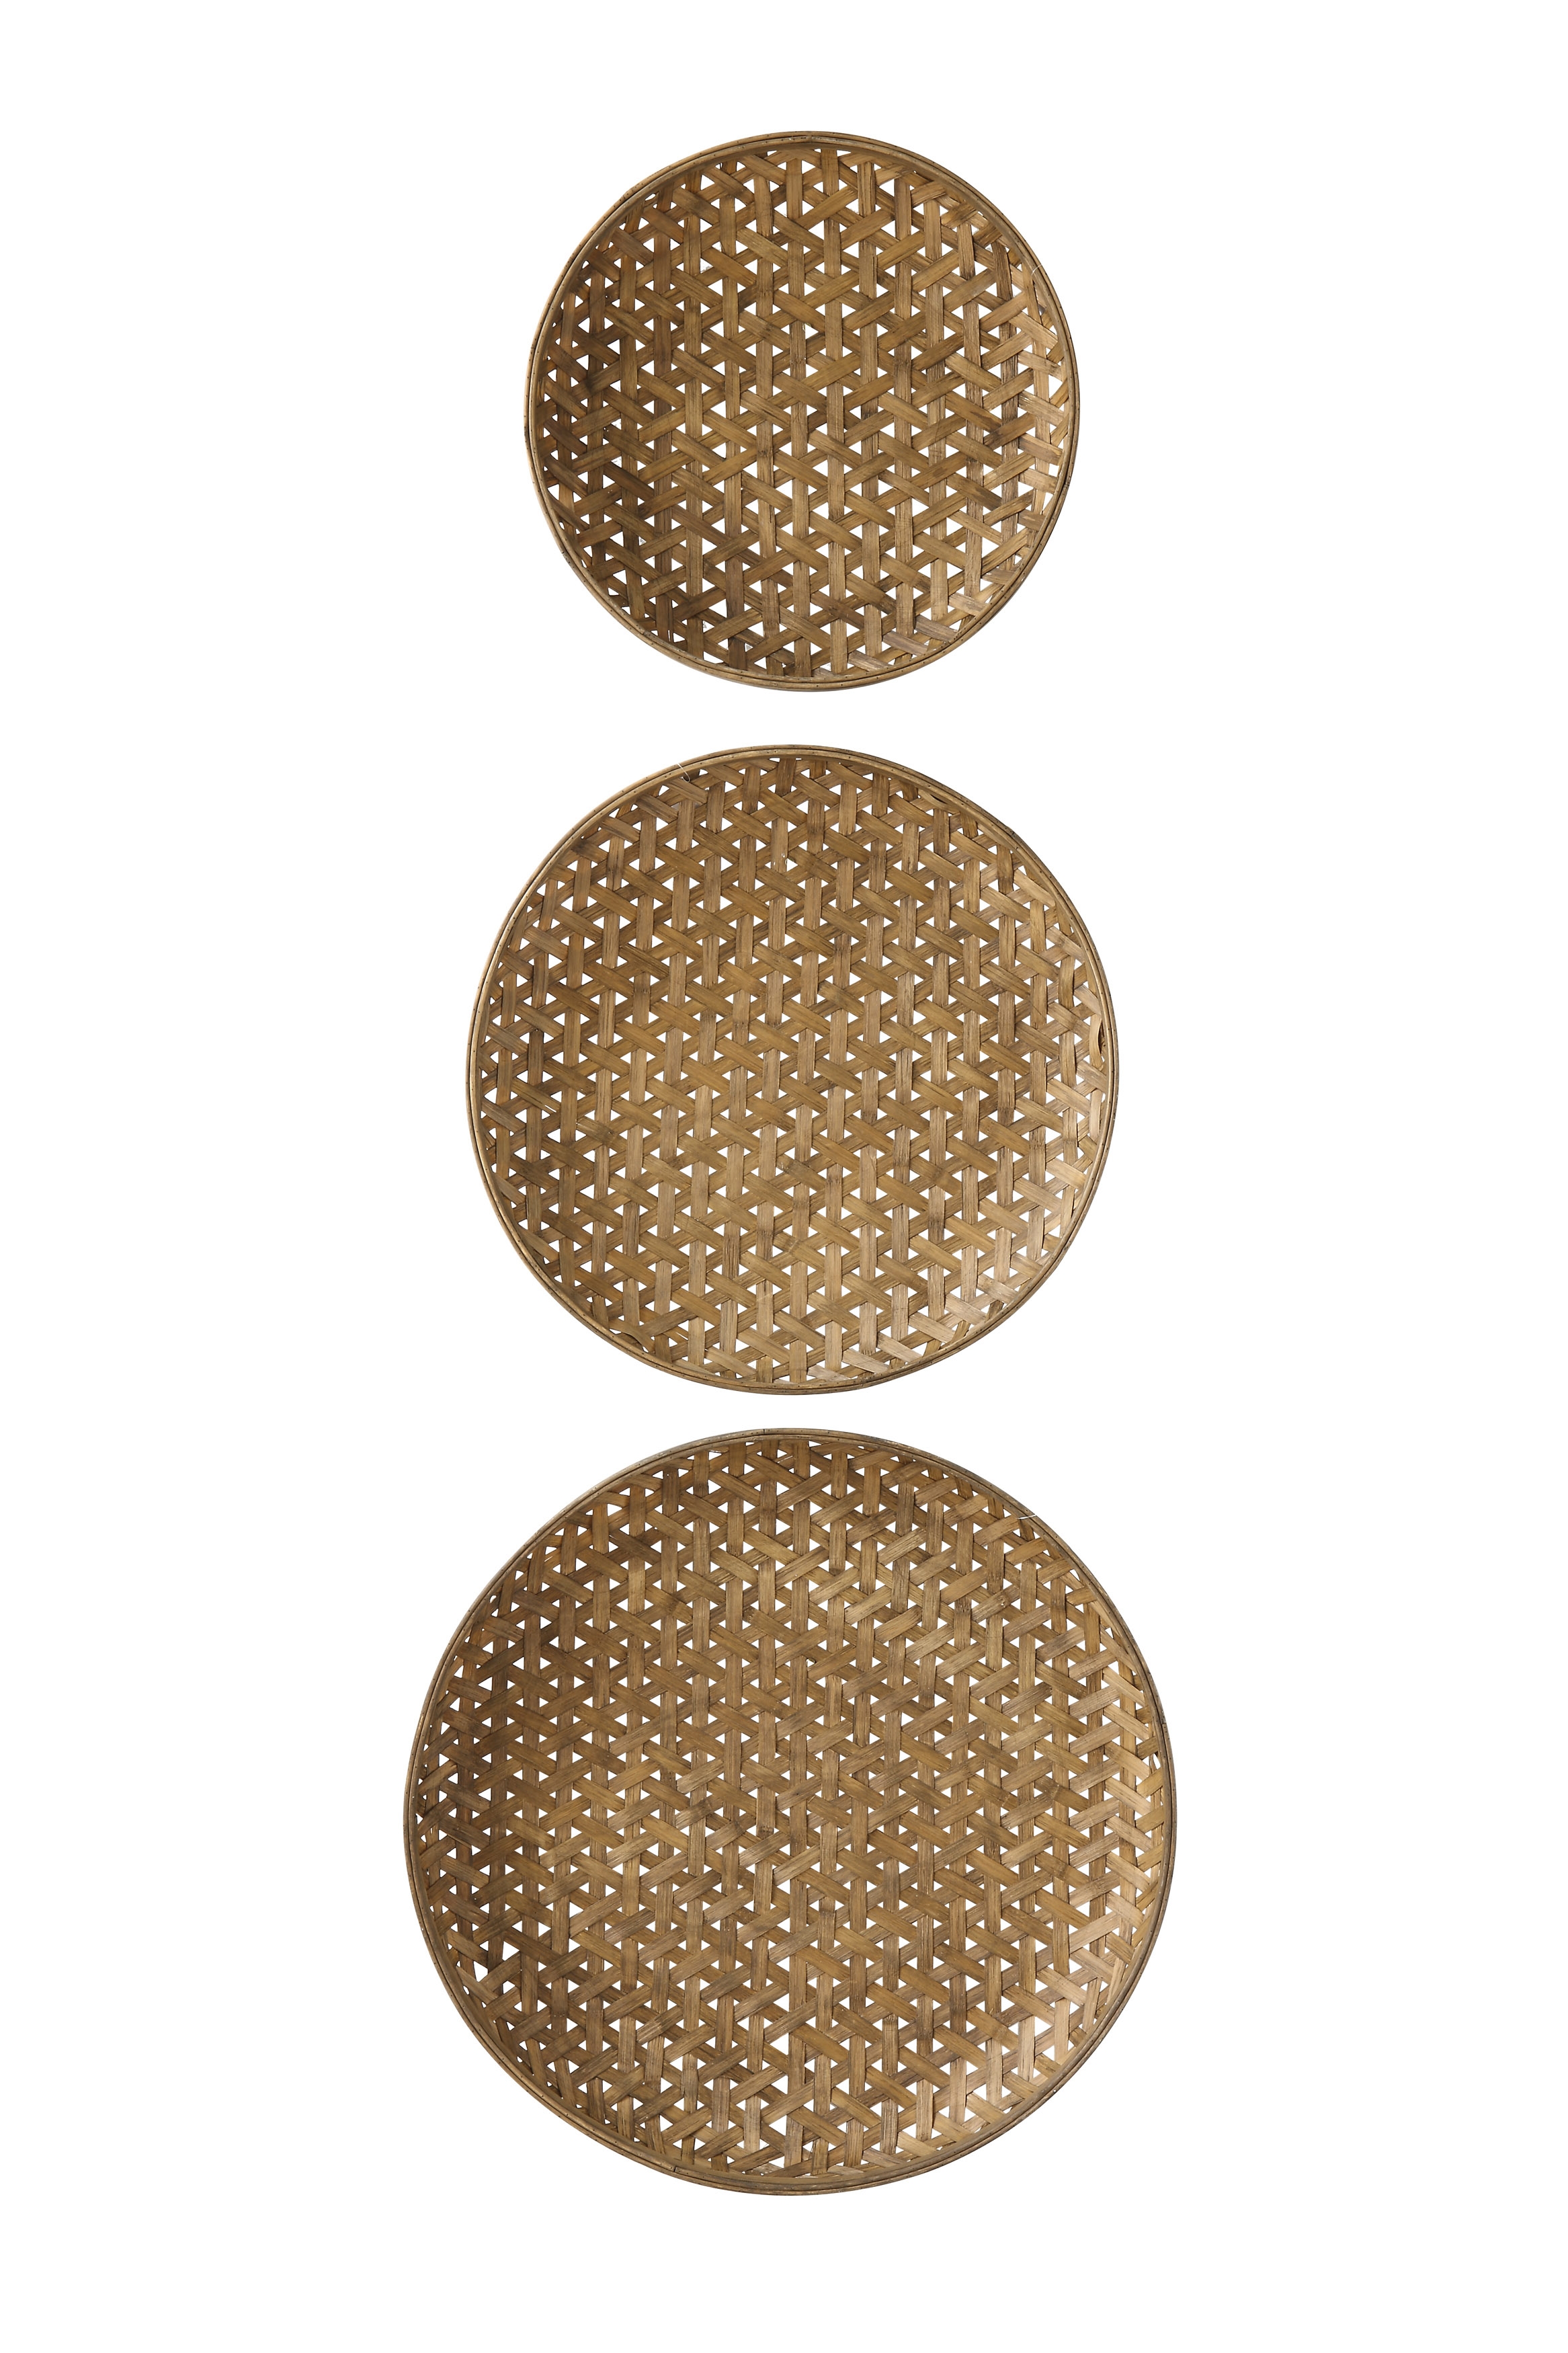 Round Bamboo Baskets (Set of 3 Sizes) - Image 0